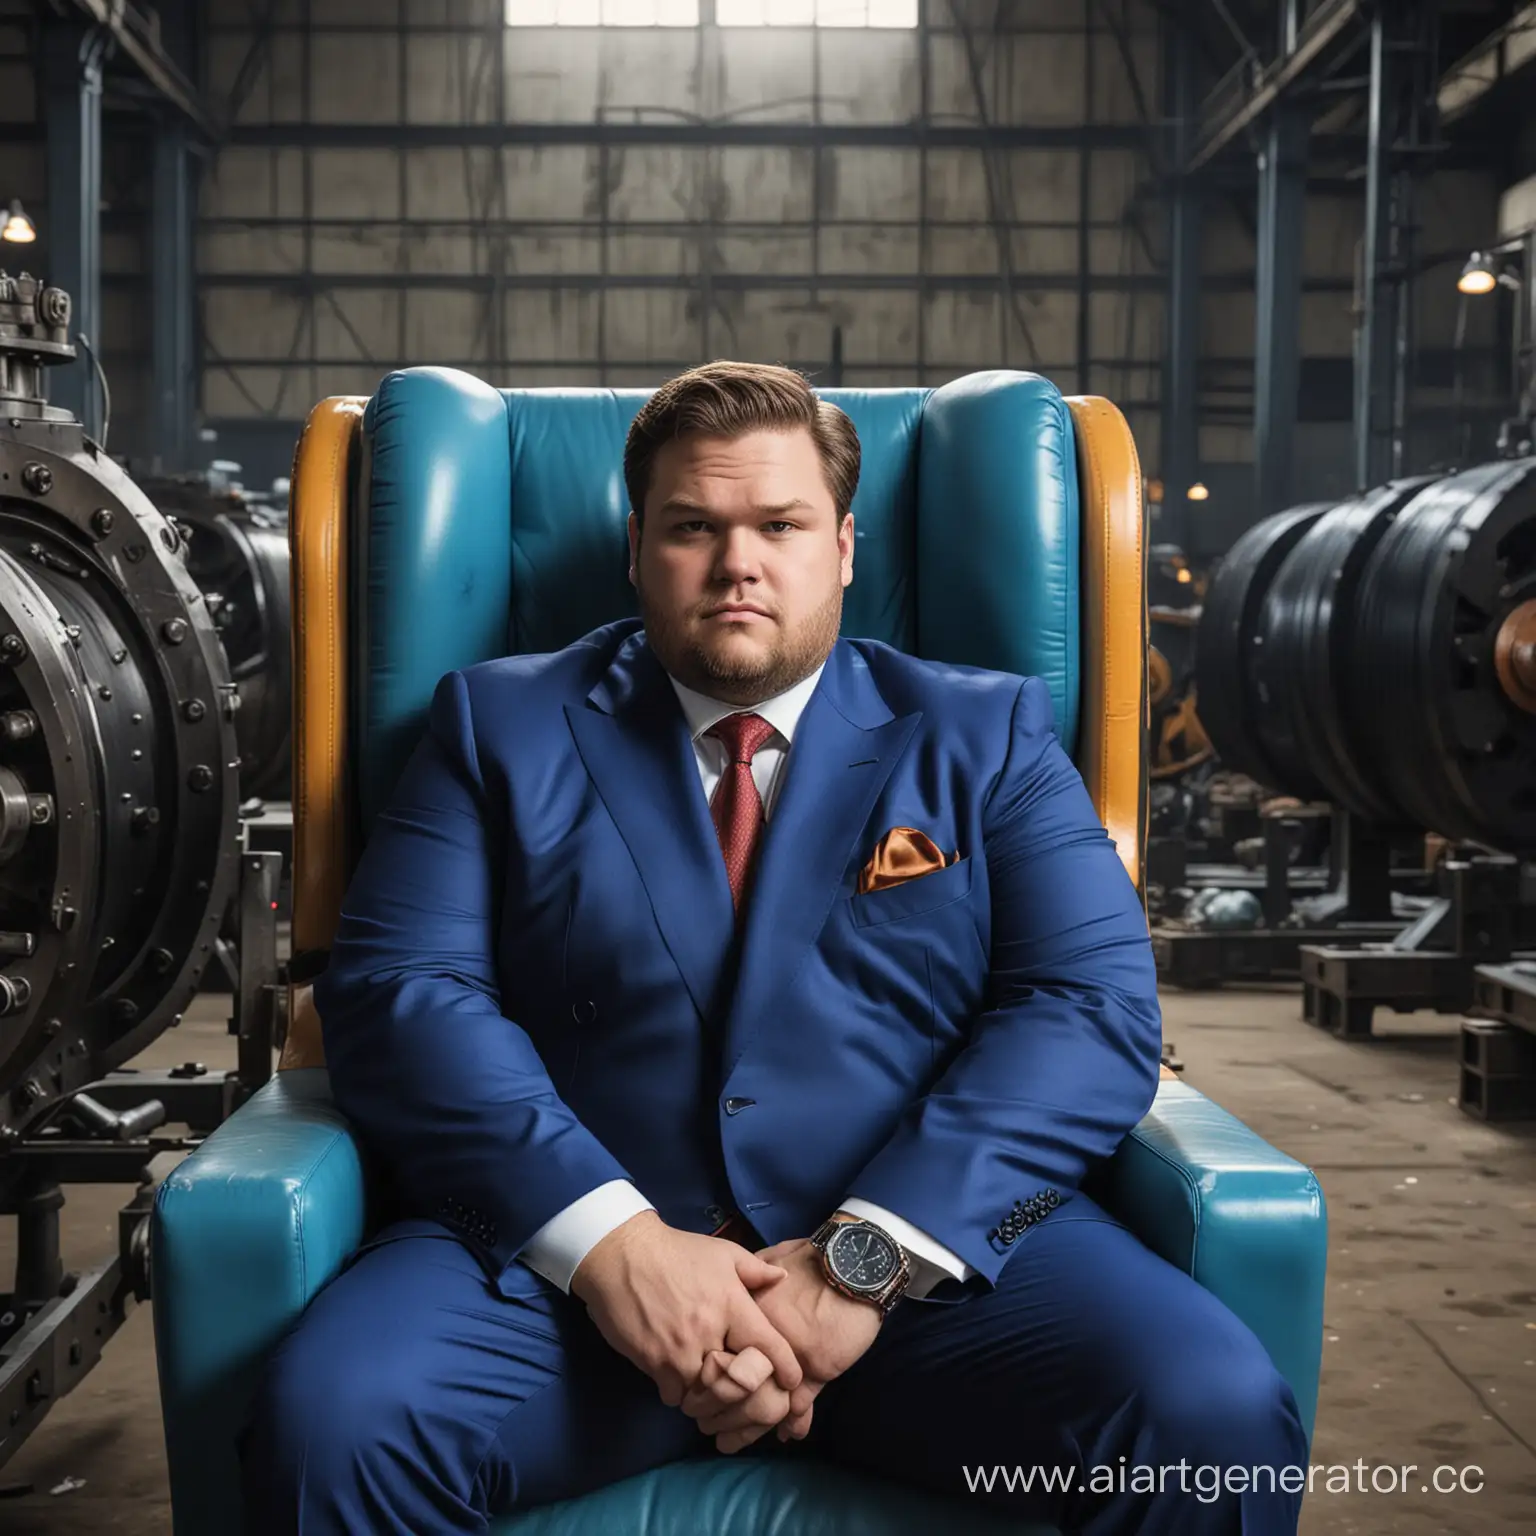 Большой жирный толстый мужик самый любимый и честный криптоинвестор сидит в синем костюме в самом дорогом кресле в мире в самых дорогих часах с самой дорогой прической в мире, посреди старого резино-технического завода.